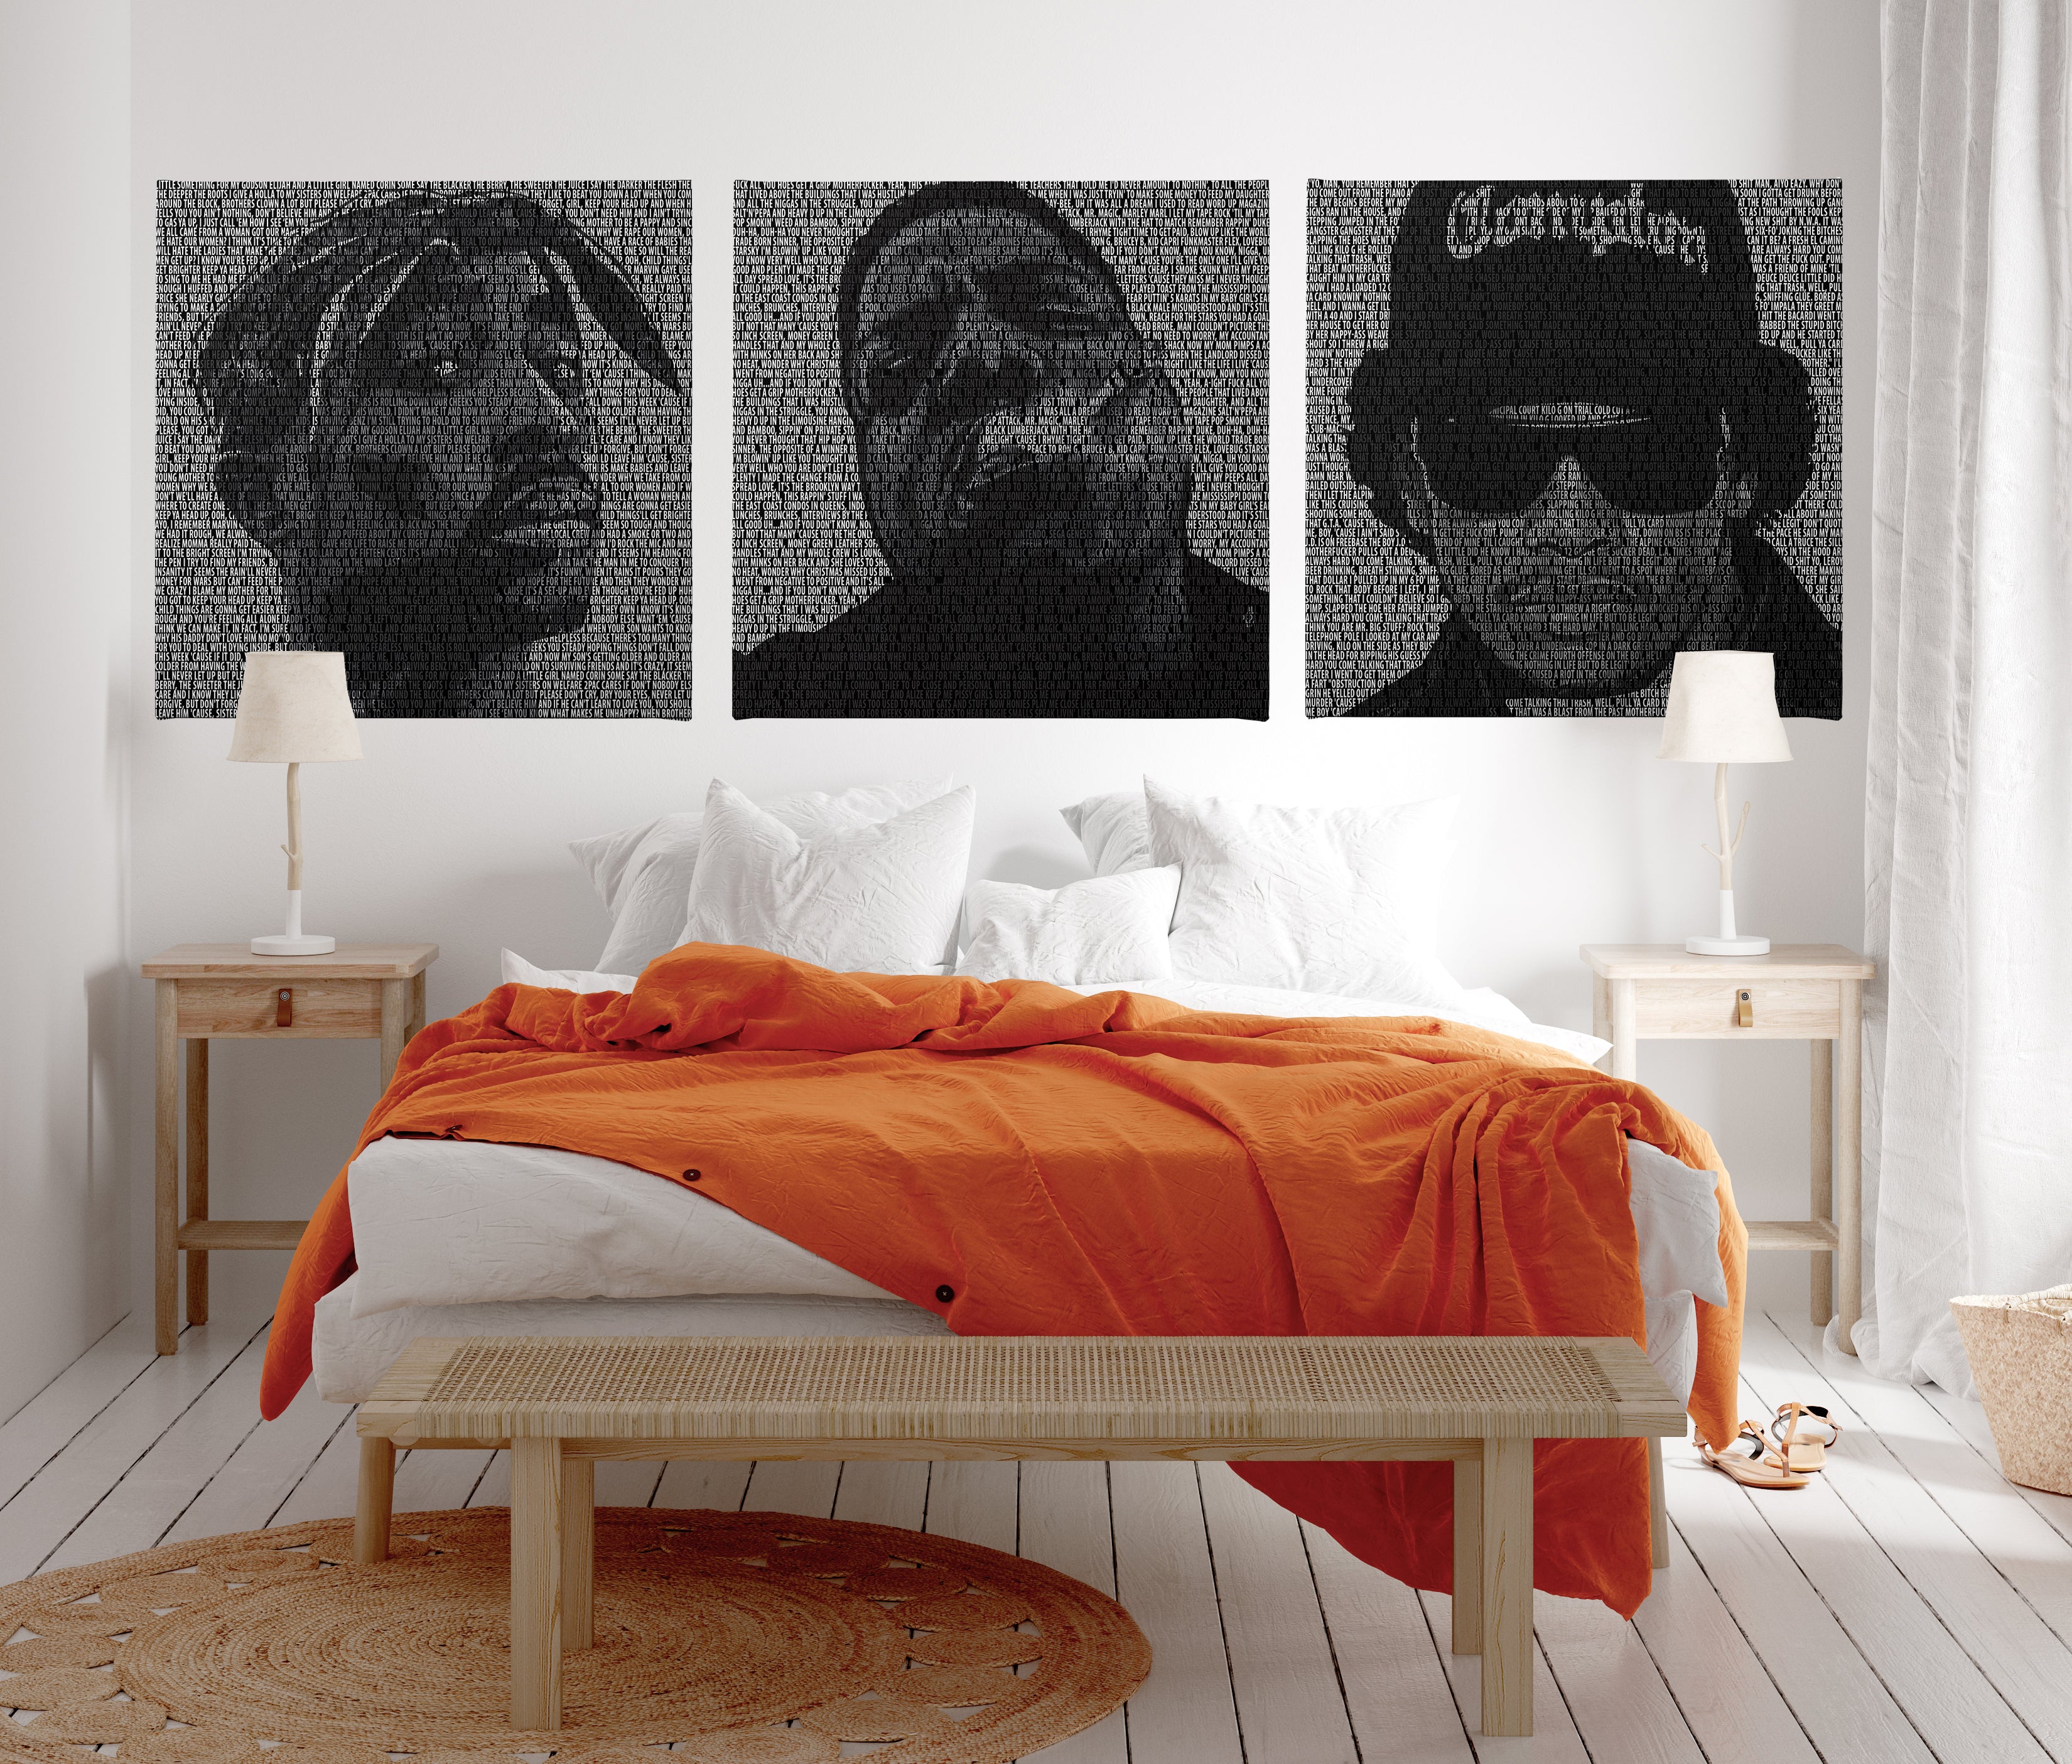 3 x Typographic Hip-Hop Framed Digital Art Canvases - Poster Prints NZ